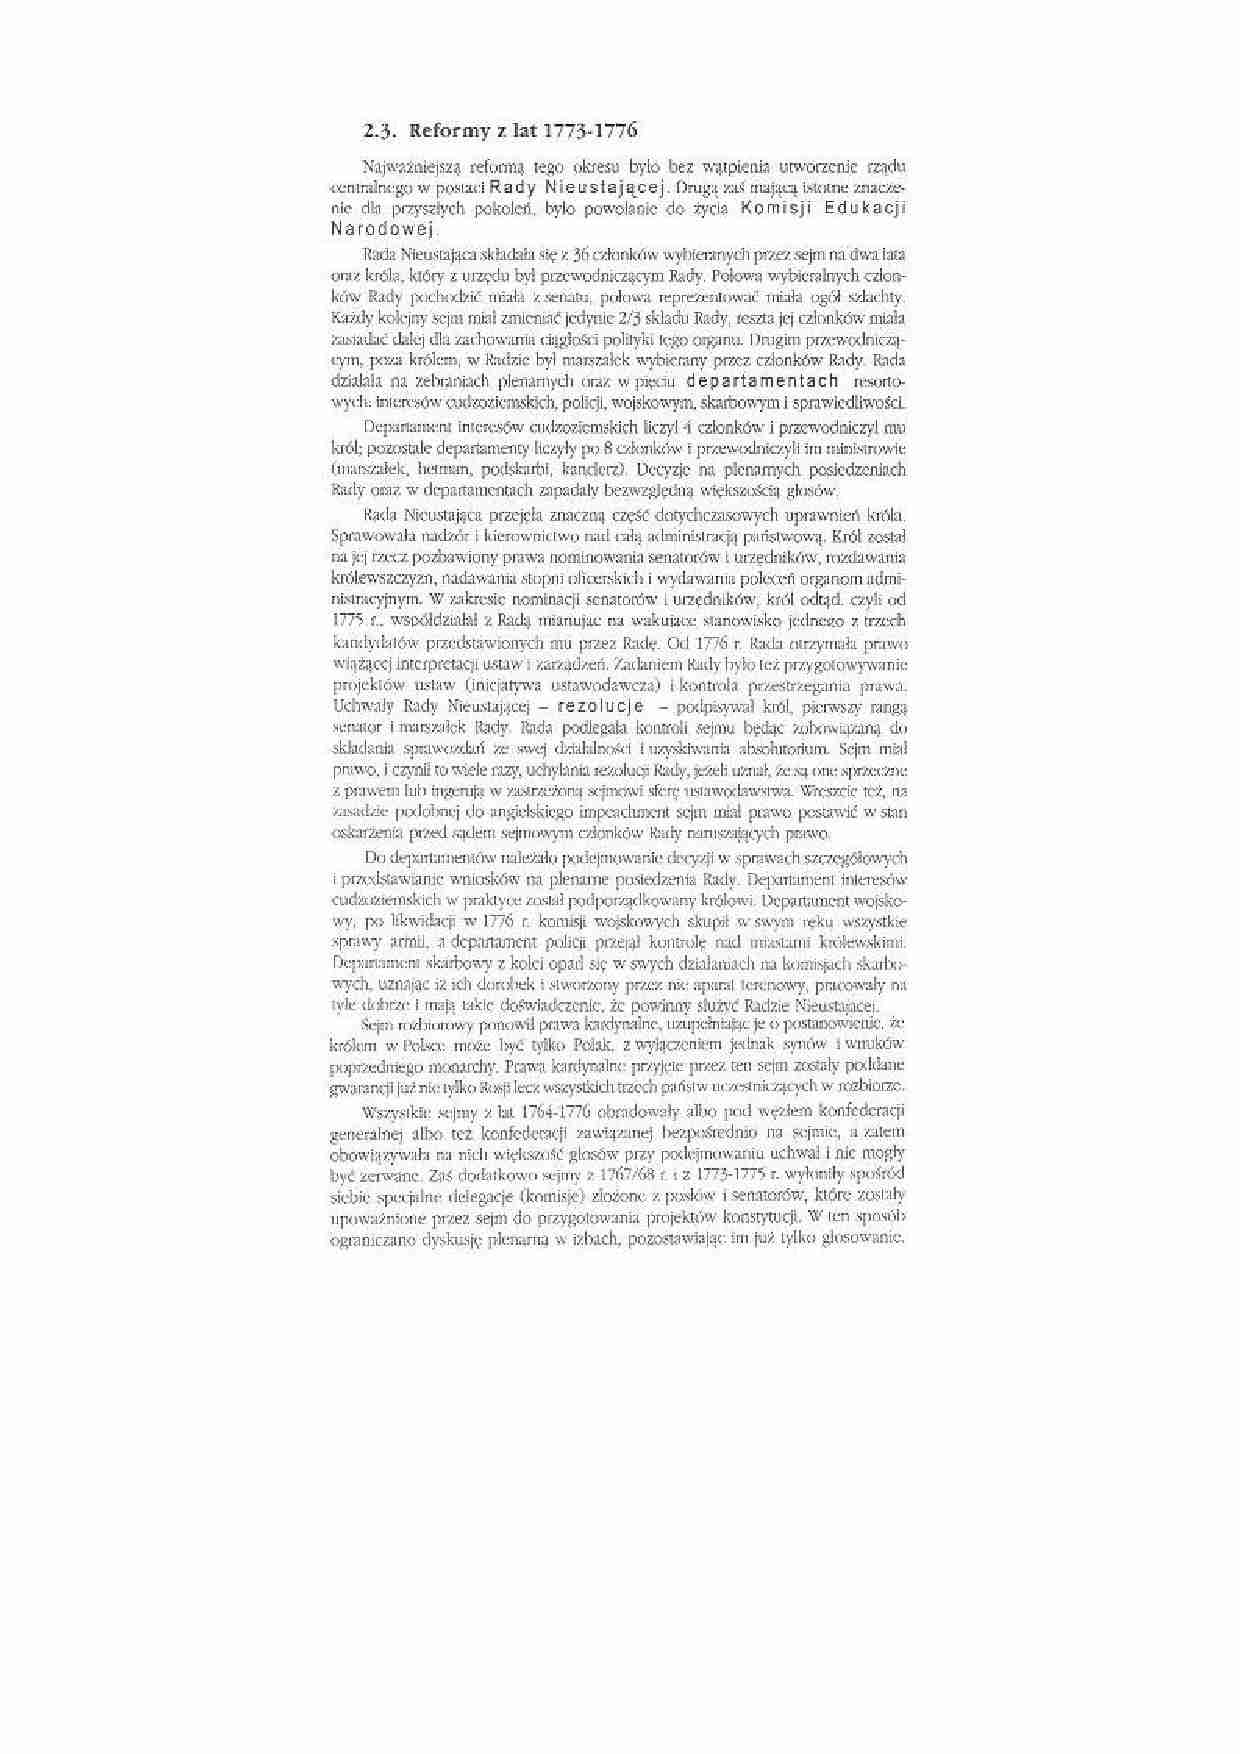 Reformy z Lat 1773-1776r - strona 1